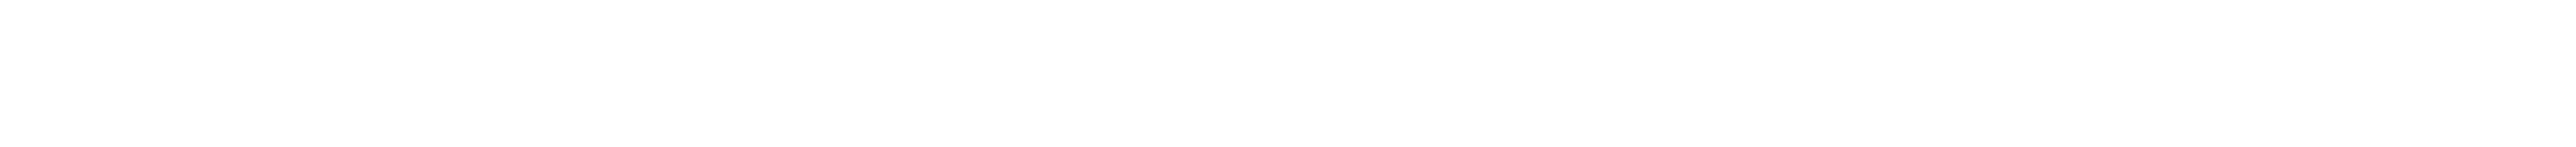 WillisTowersWatson-logo